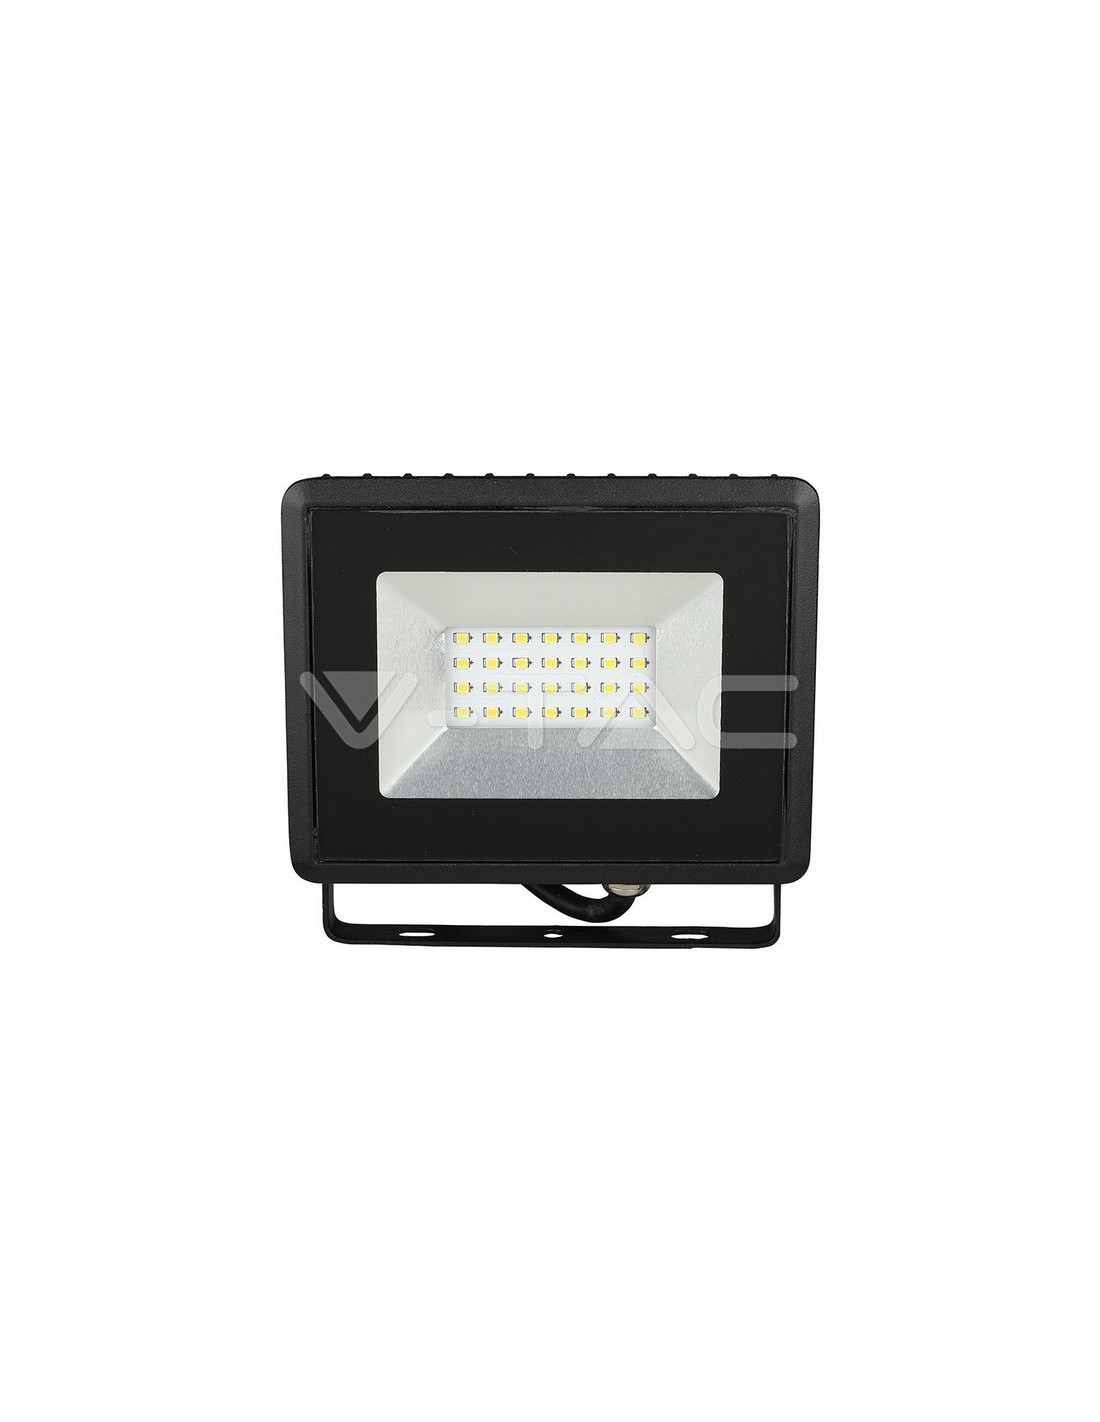 Proyector LED 100W Negro V-Tac Pro - V-Tac Pro